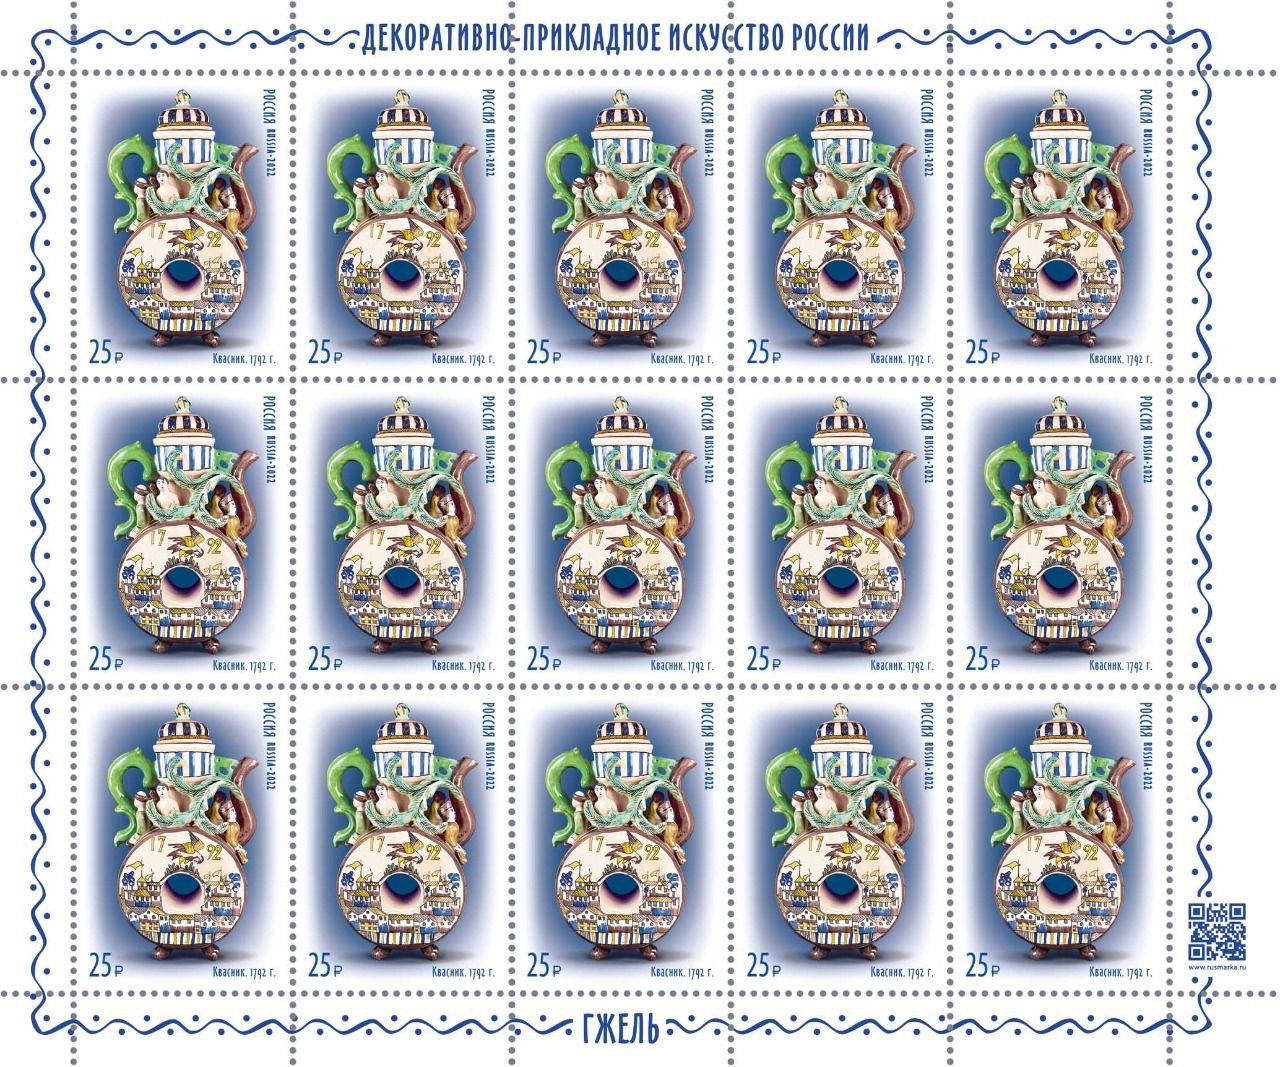 Гжельский фарфоровый завод и «Почта России» представили четыре новые марки 